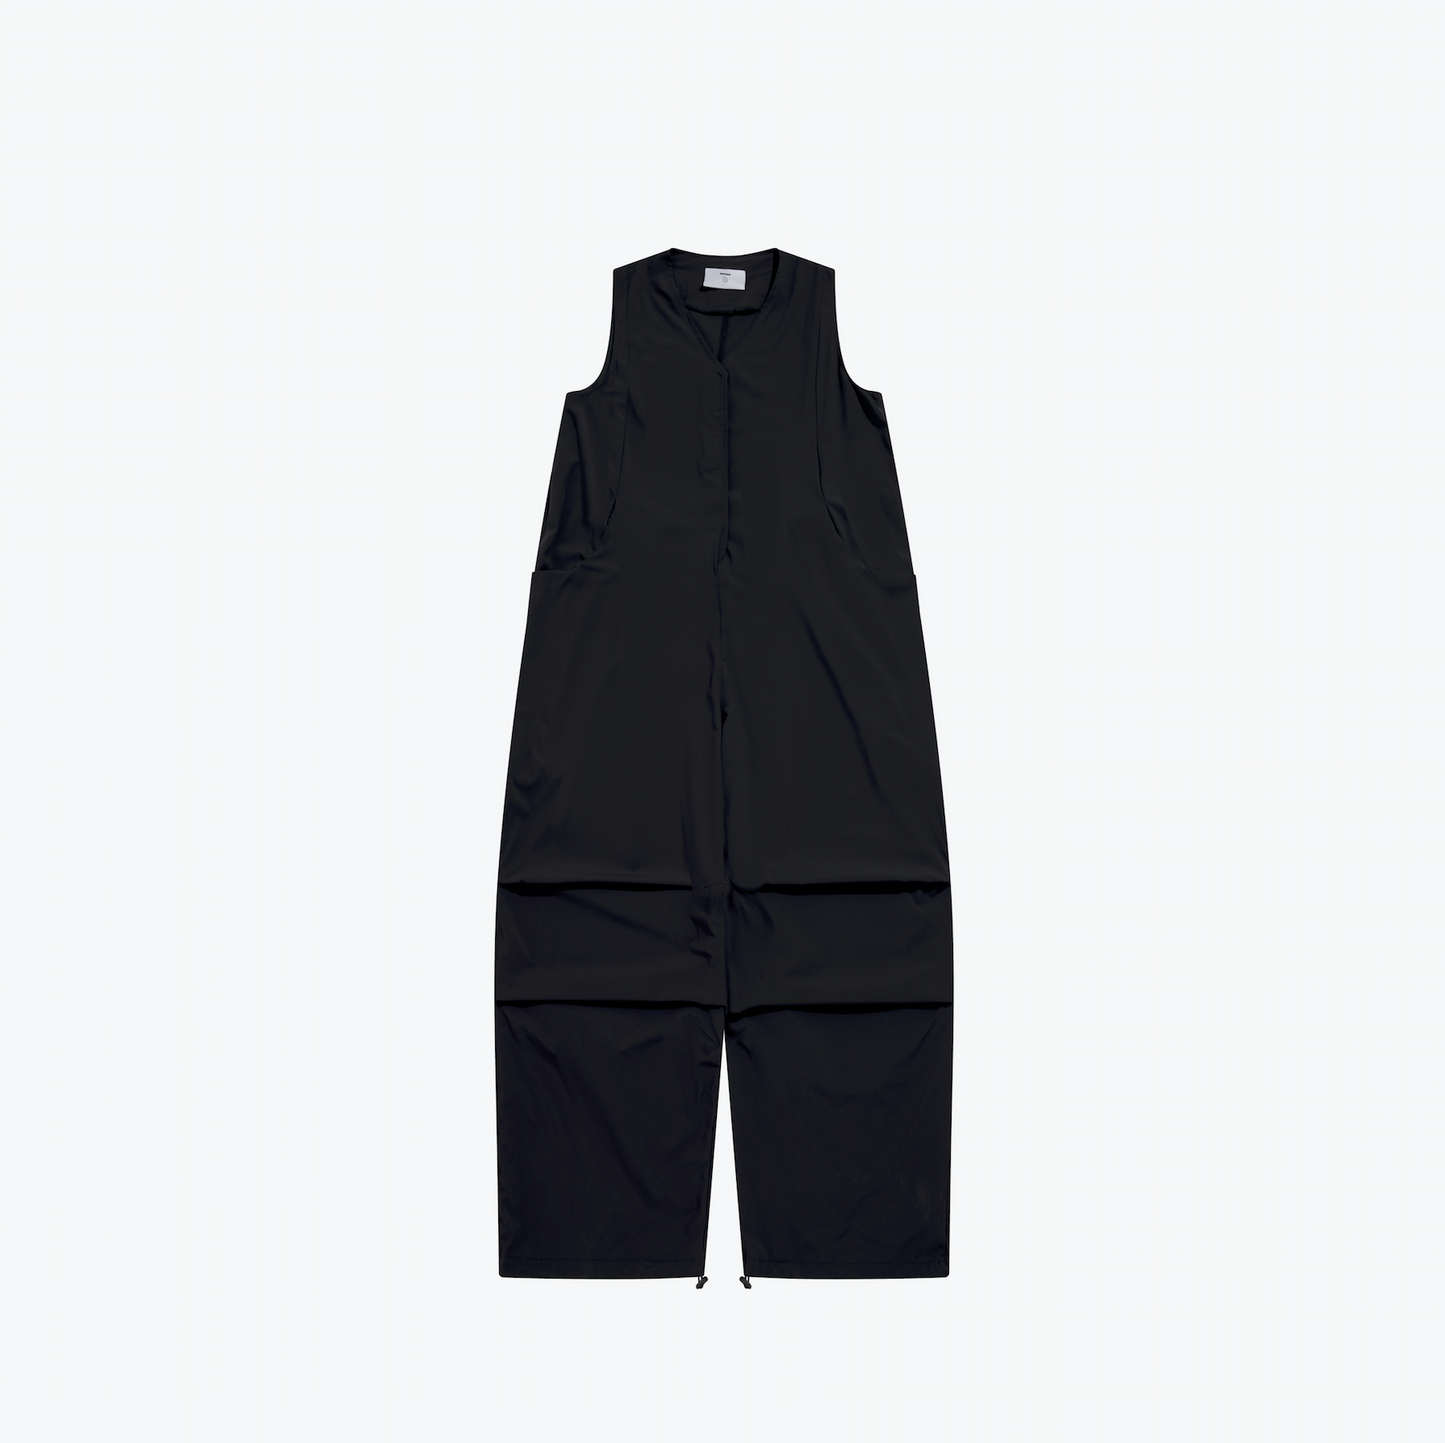 
                  
                    Flightsuit with Tactical Vest black【L23-16bk】
                  
                